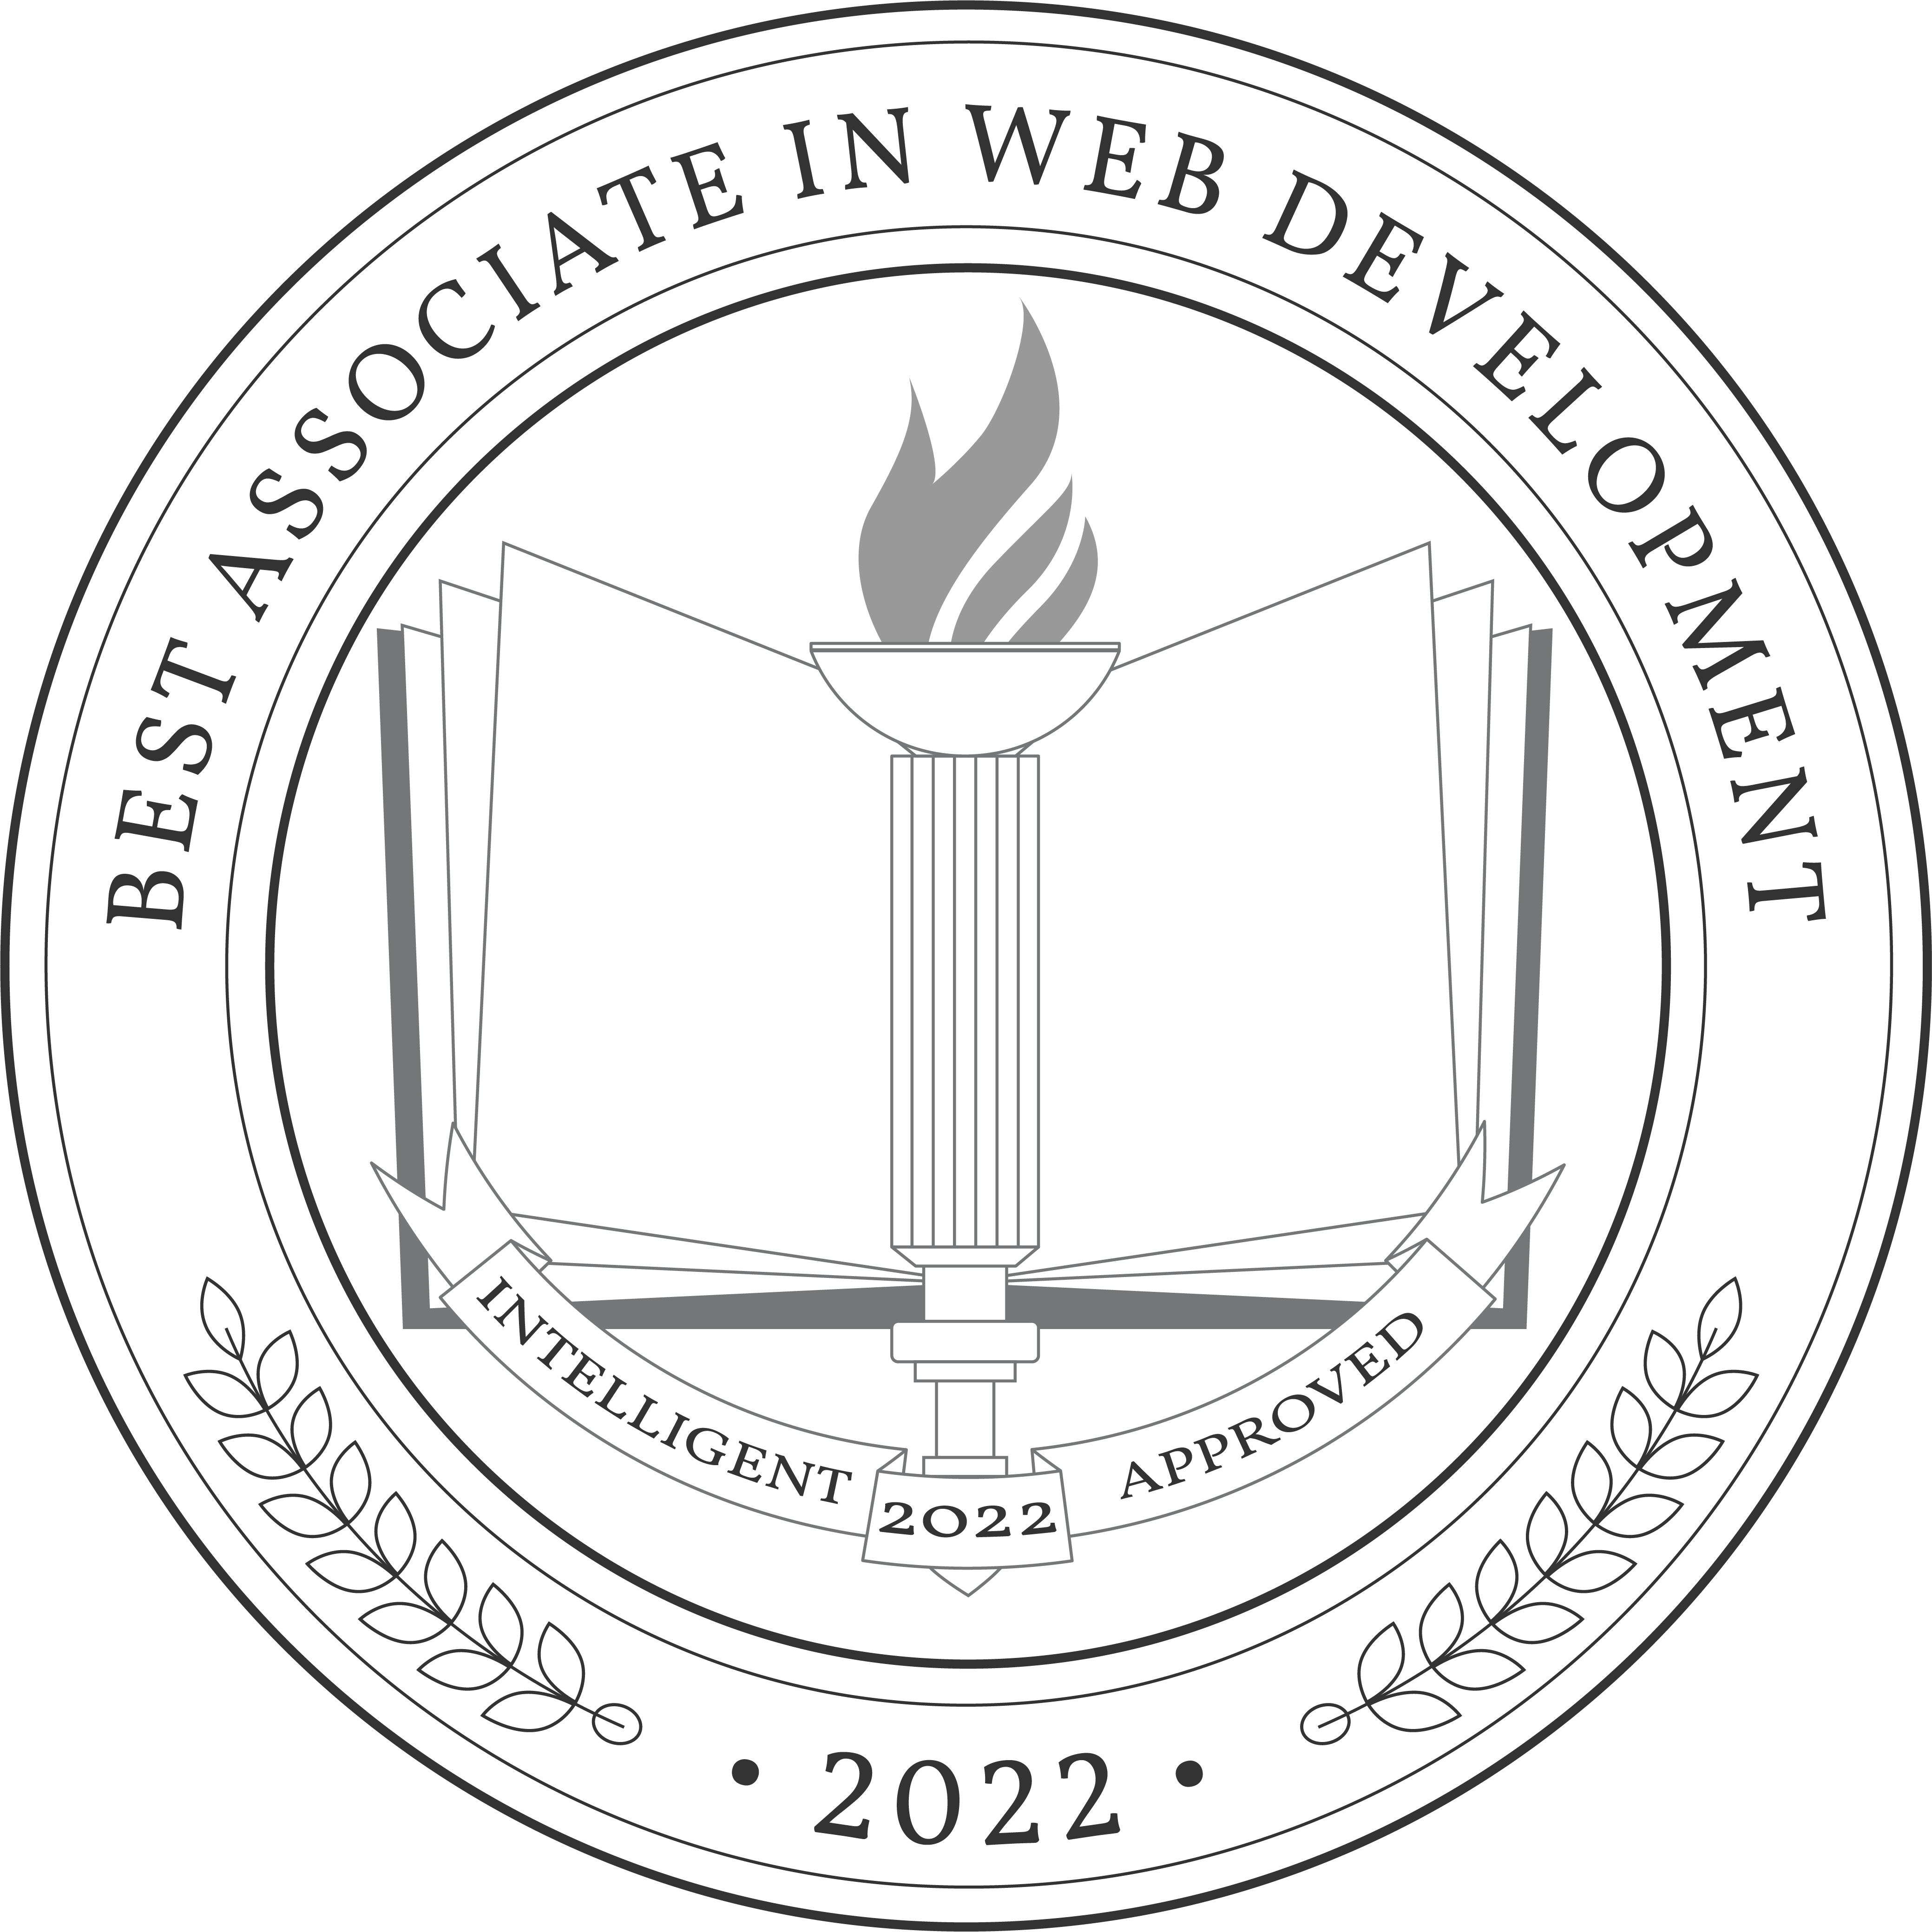 Best Associate in Web Development Badge